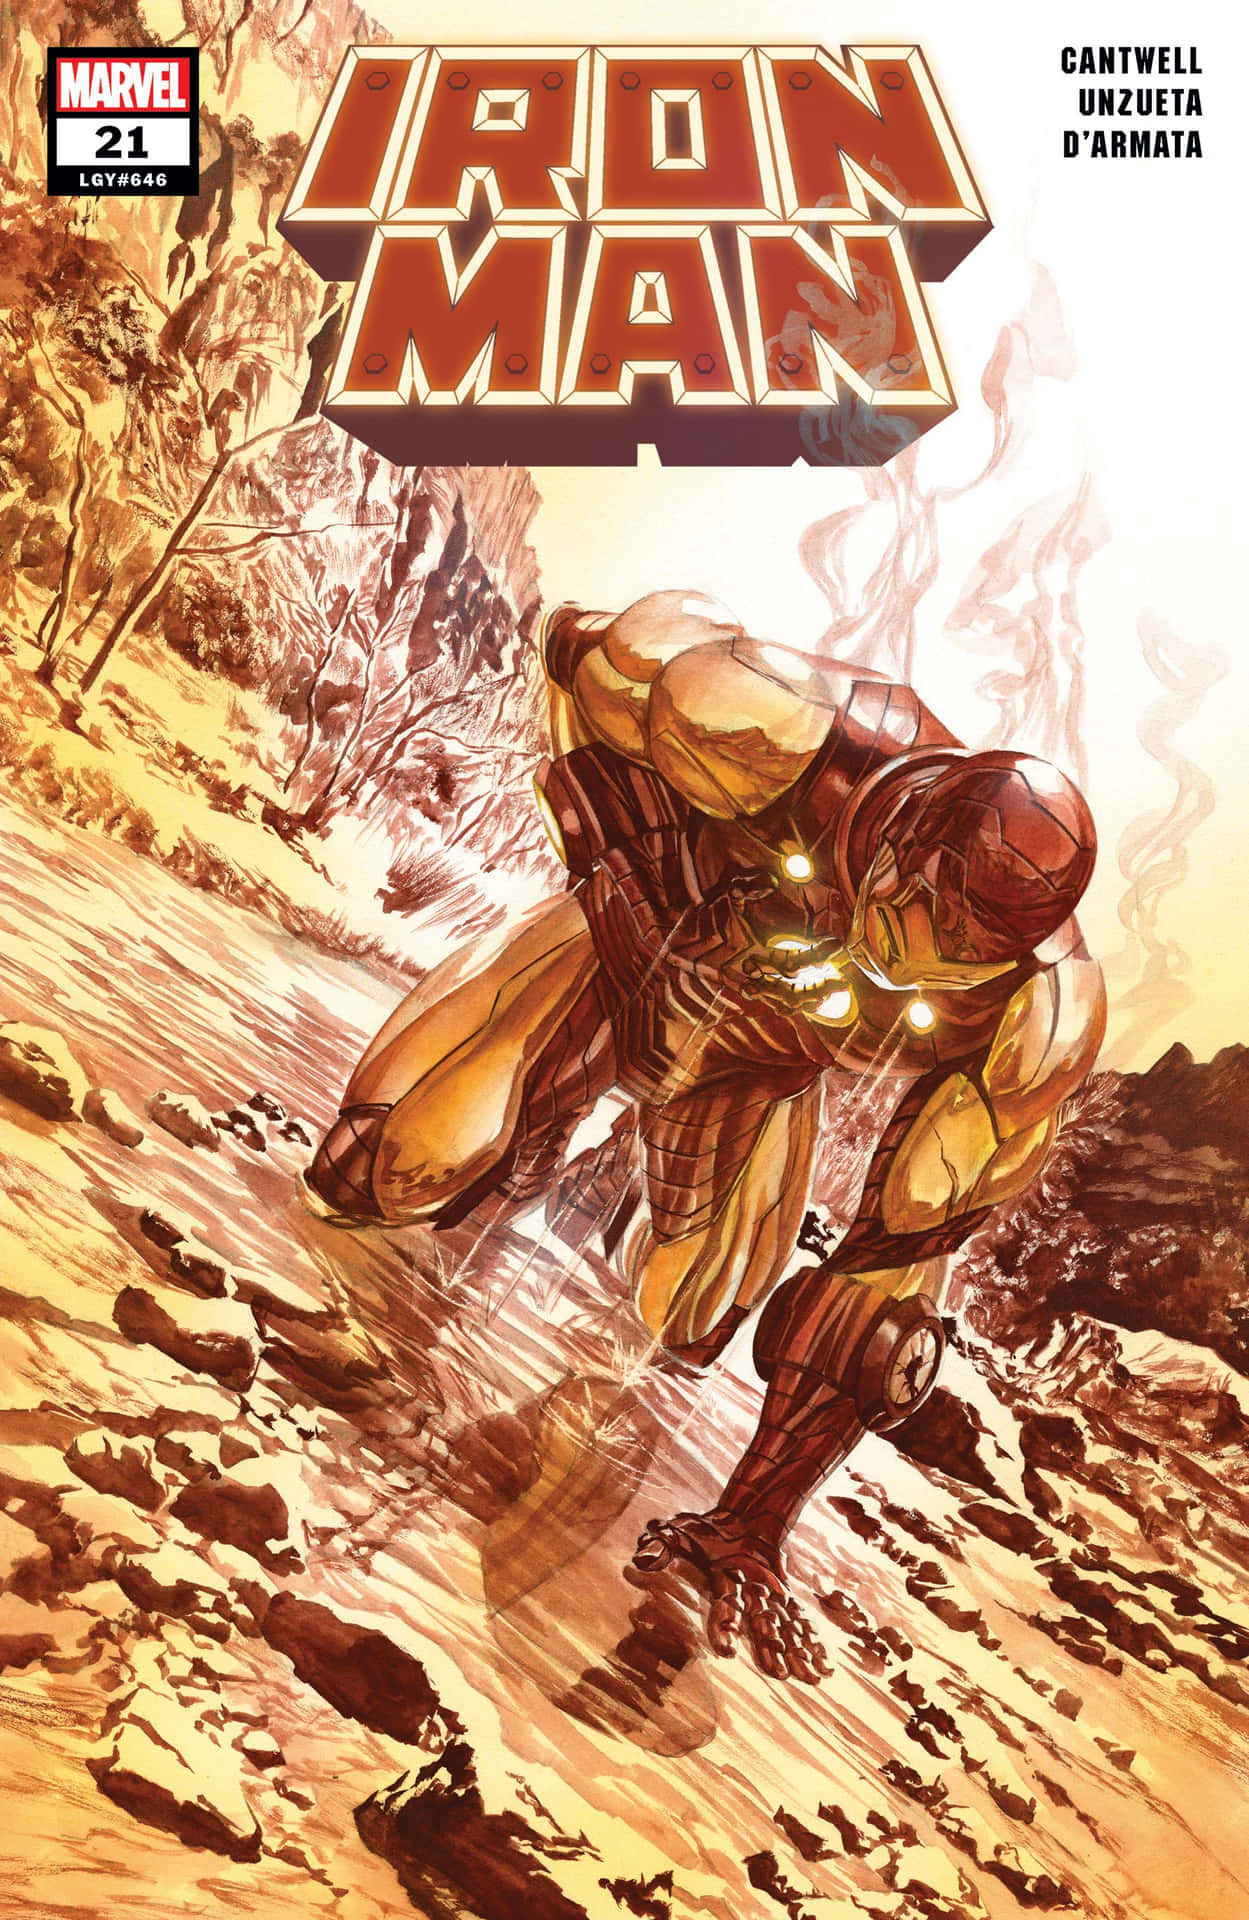 Imagende Portada De Cómic De Iron Man En El Suelo